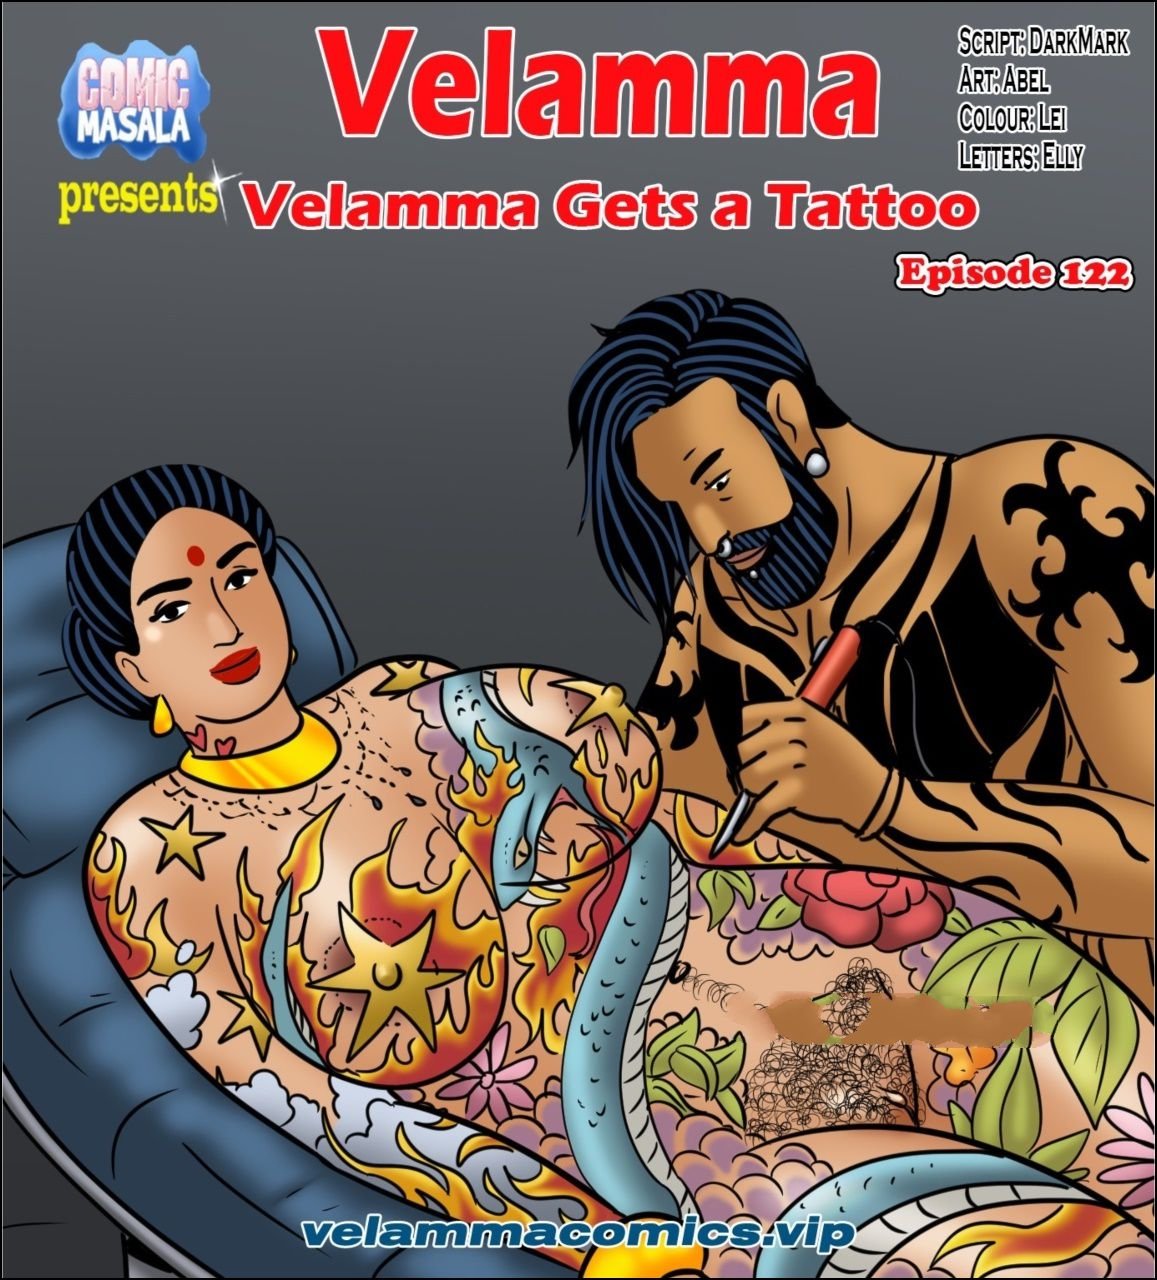 Velamma 86 - Velamma [Velamma] - 122 . Velamma - Chapter 122 - Velamma Gets A Tattoo [ Velamma]